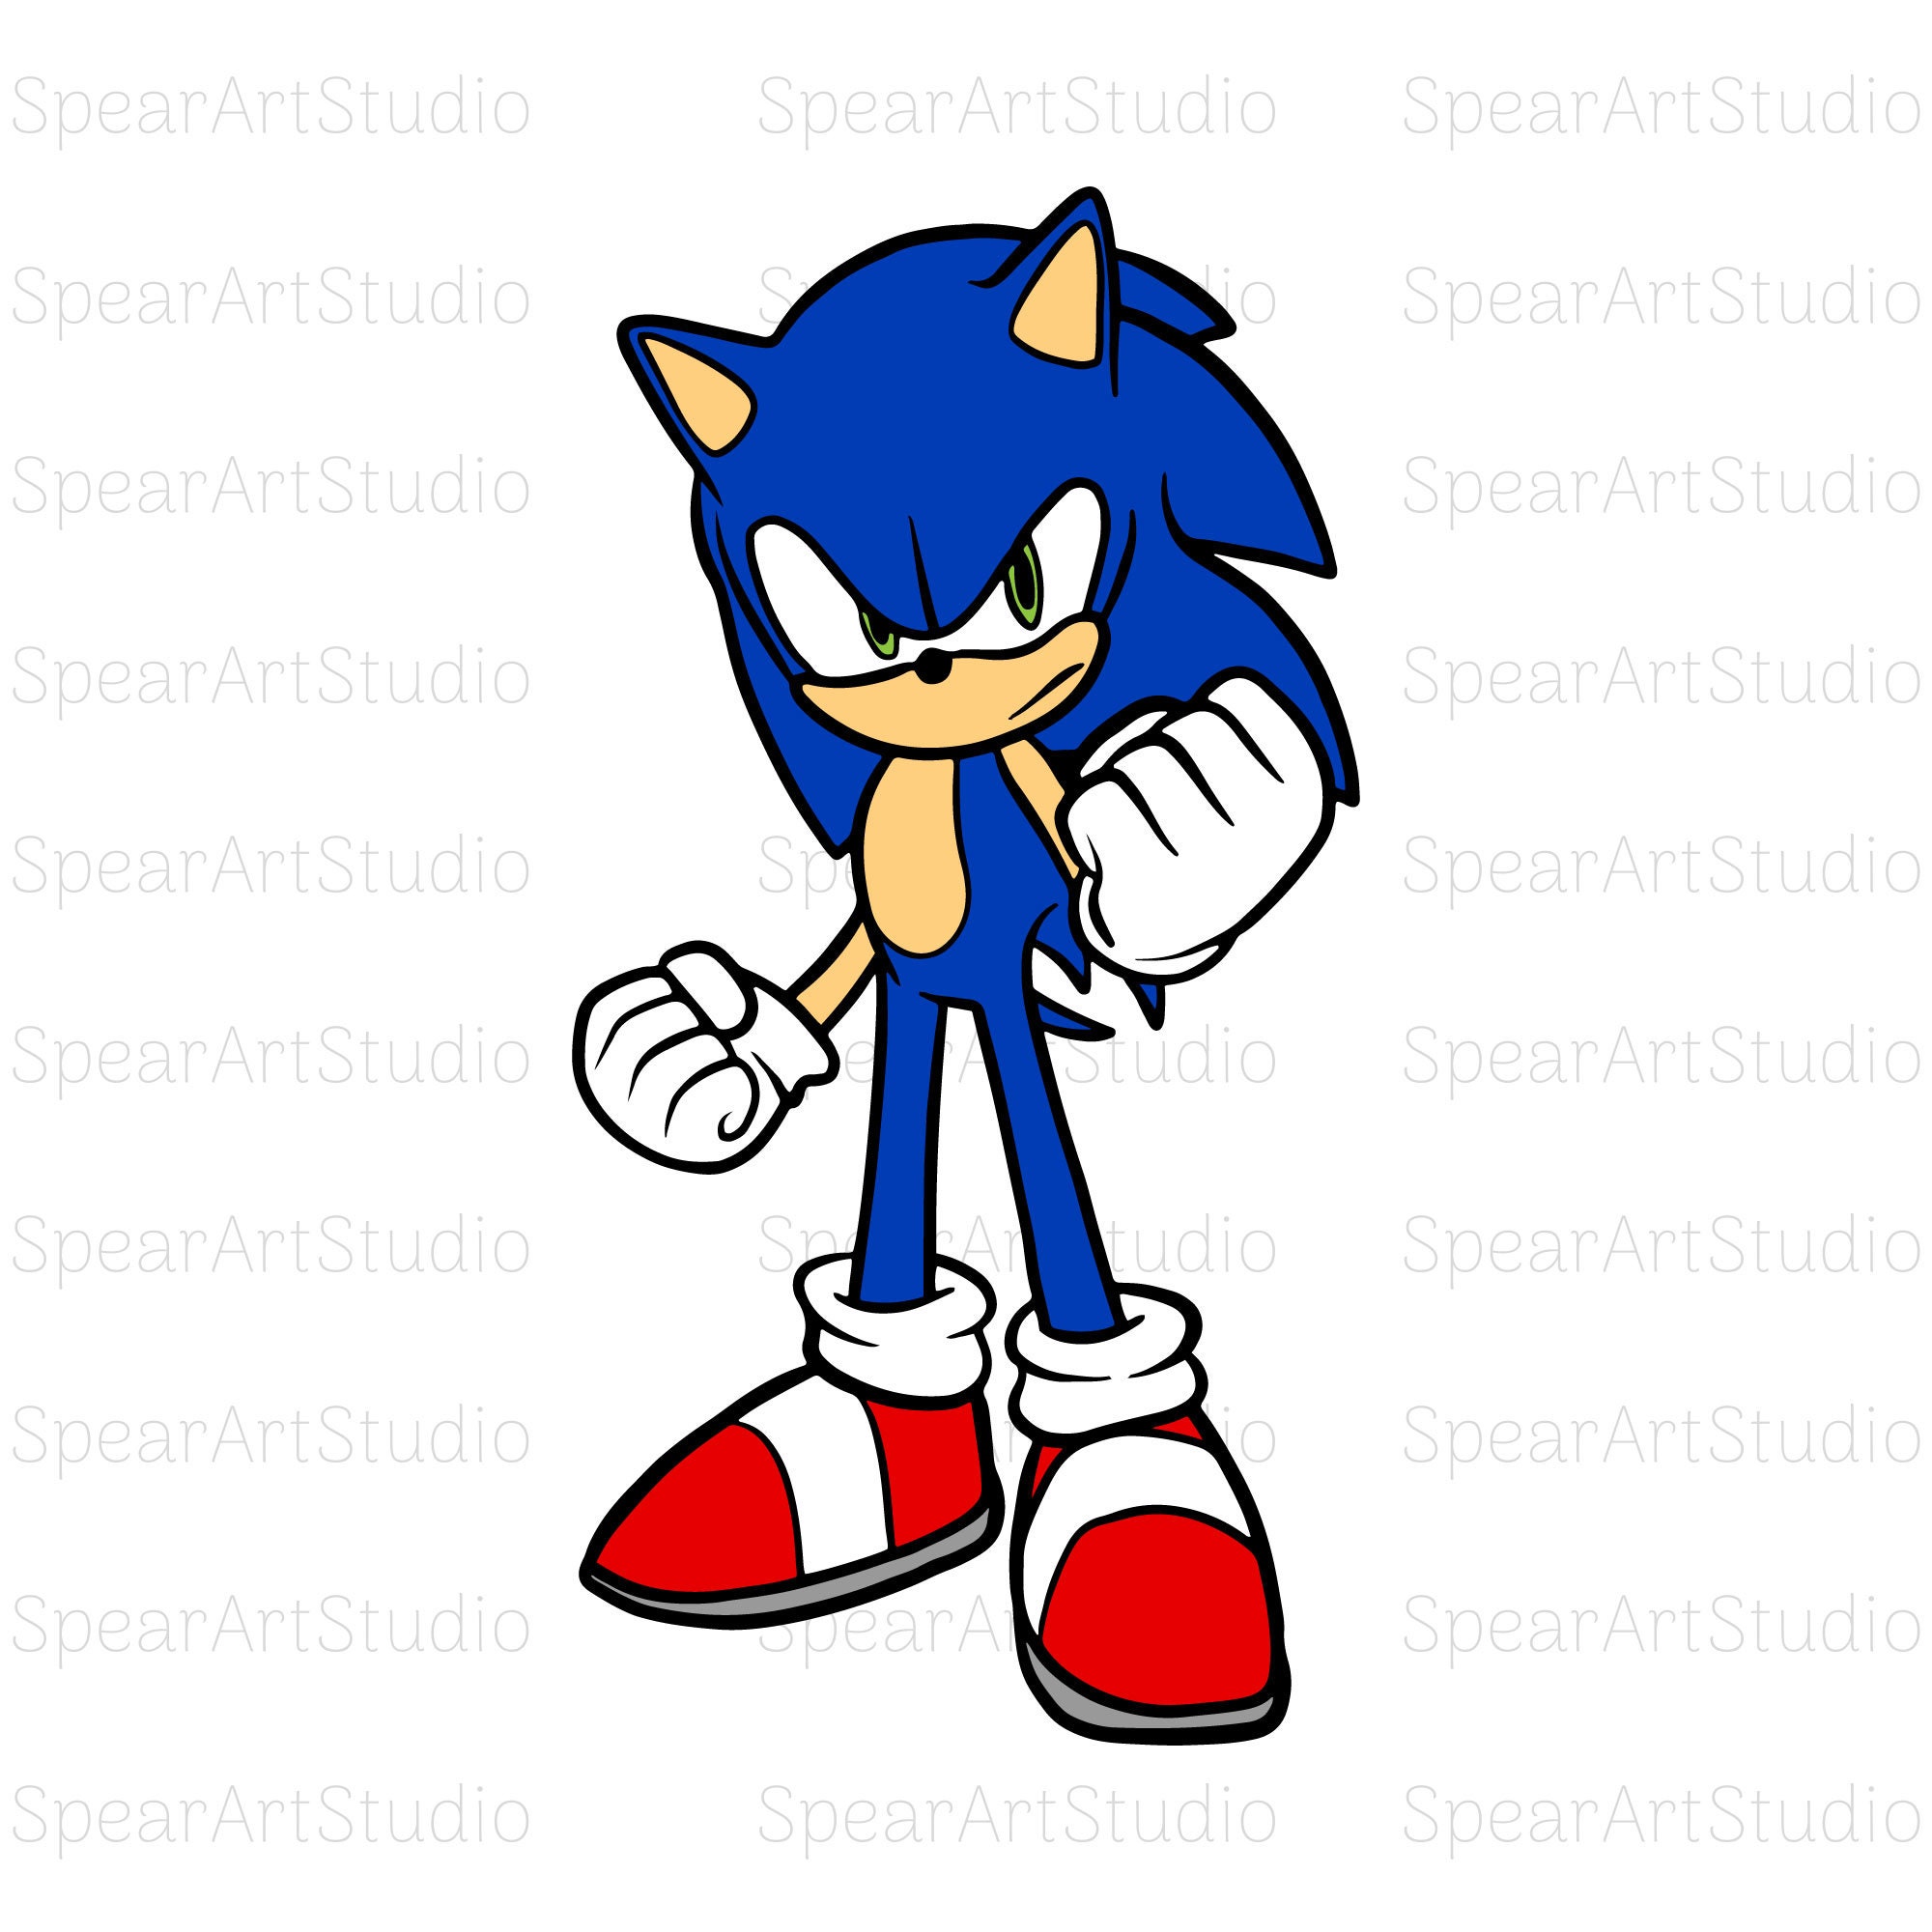 File:Classic sonic nose.svg - Sonic Retro